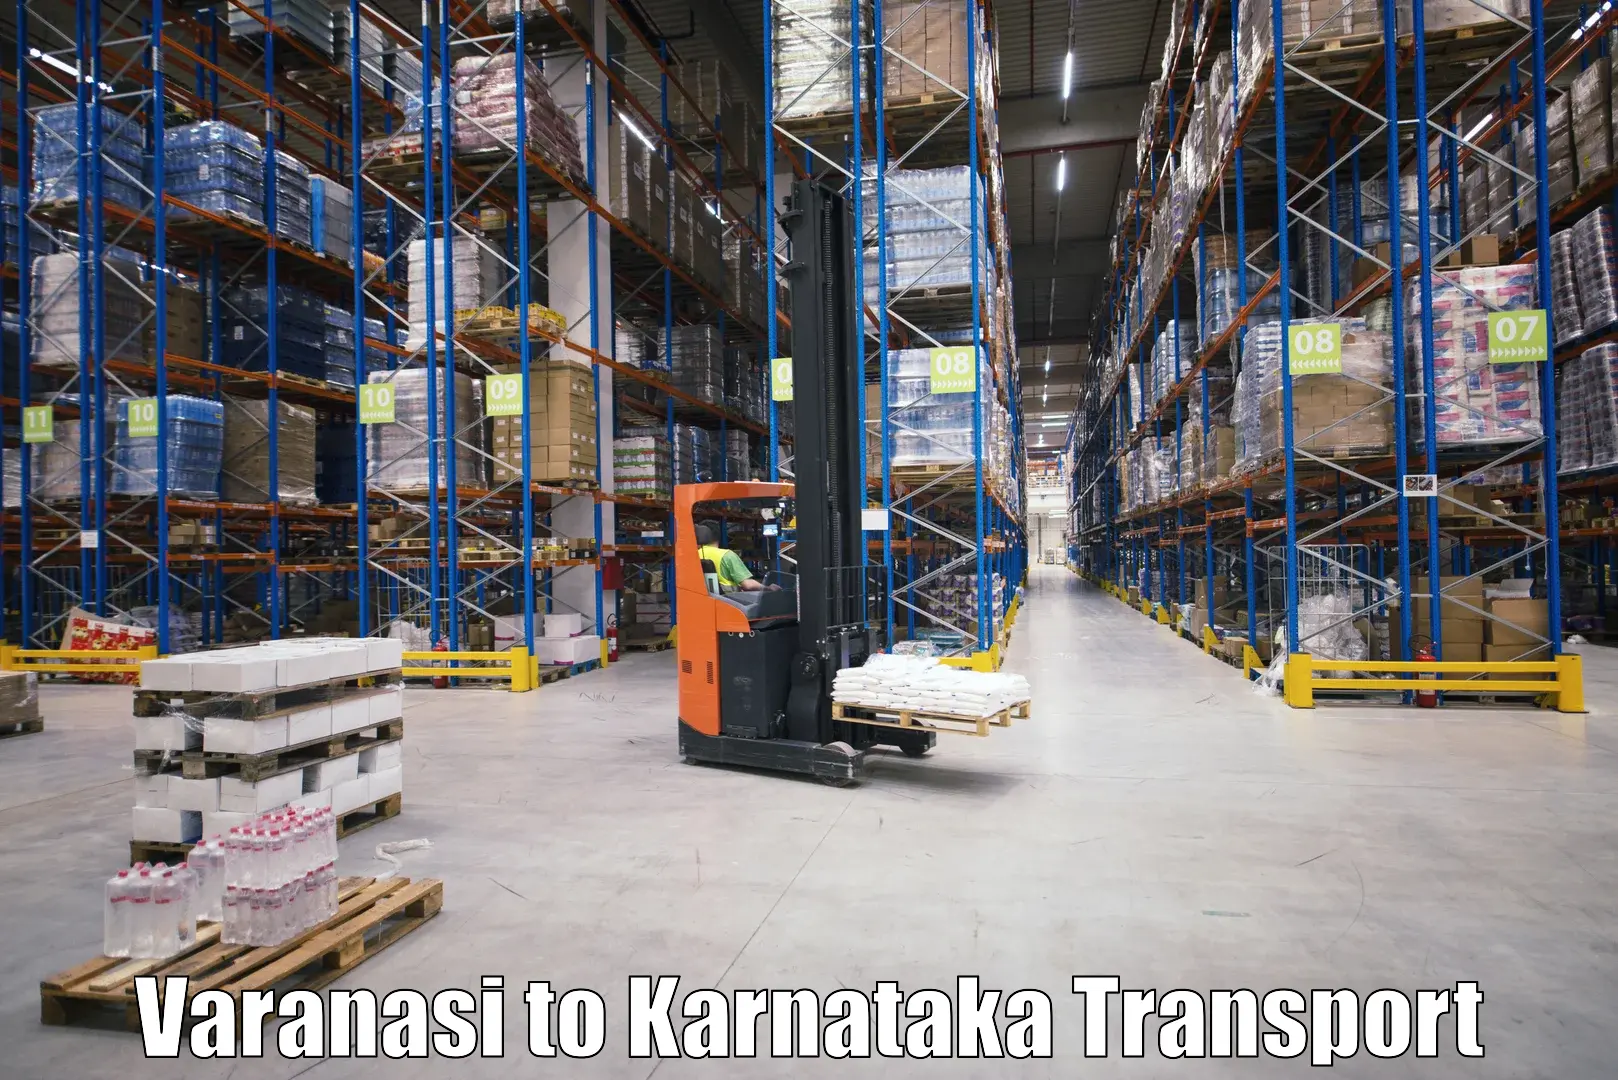 Daily parcel service transport Varanasi to Chikkaballapur